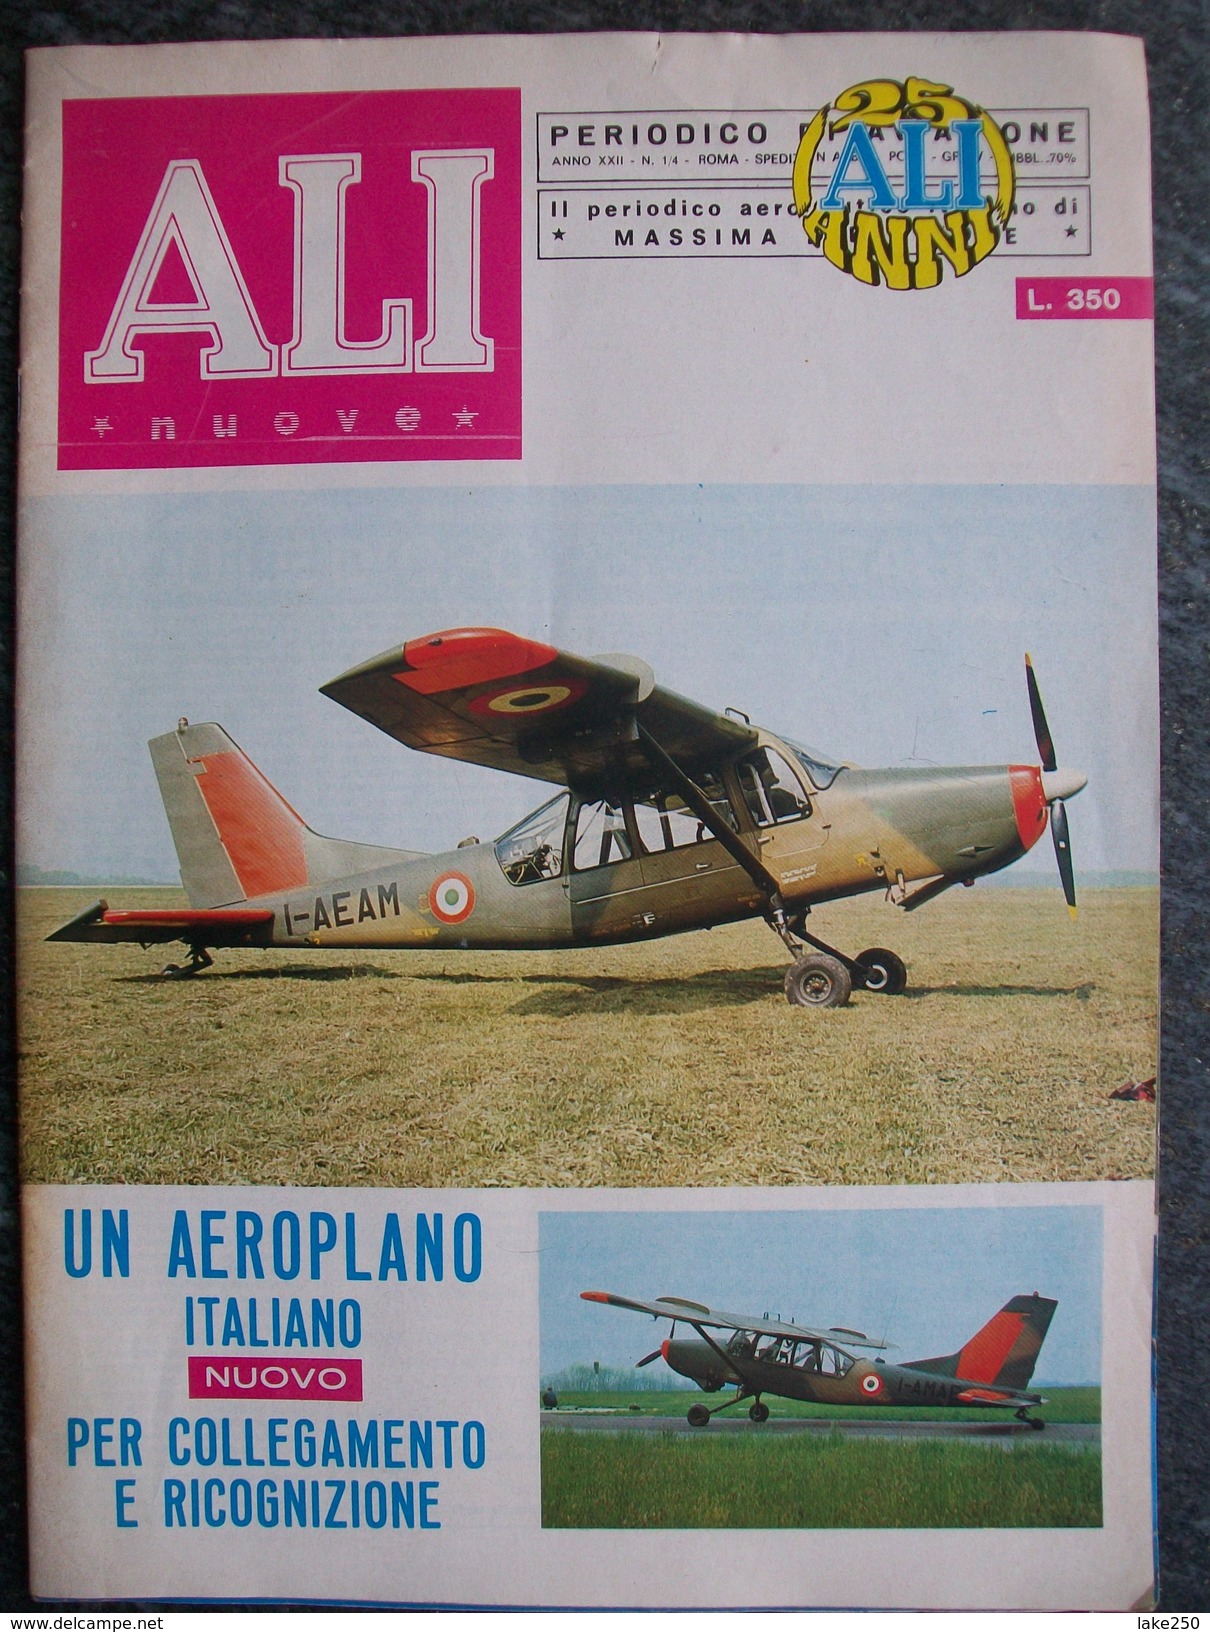 RIVISTA  ALI Nuove N°1/4 Del 1970  Aerei Aeroplani - Moteurs